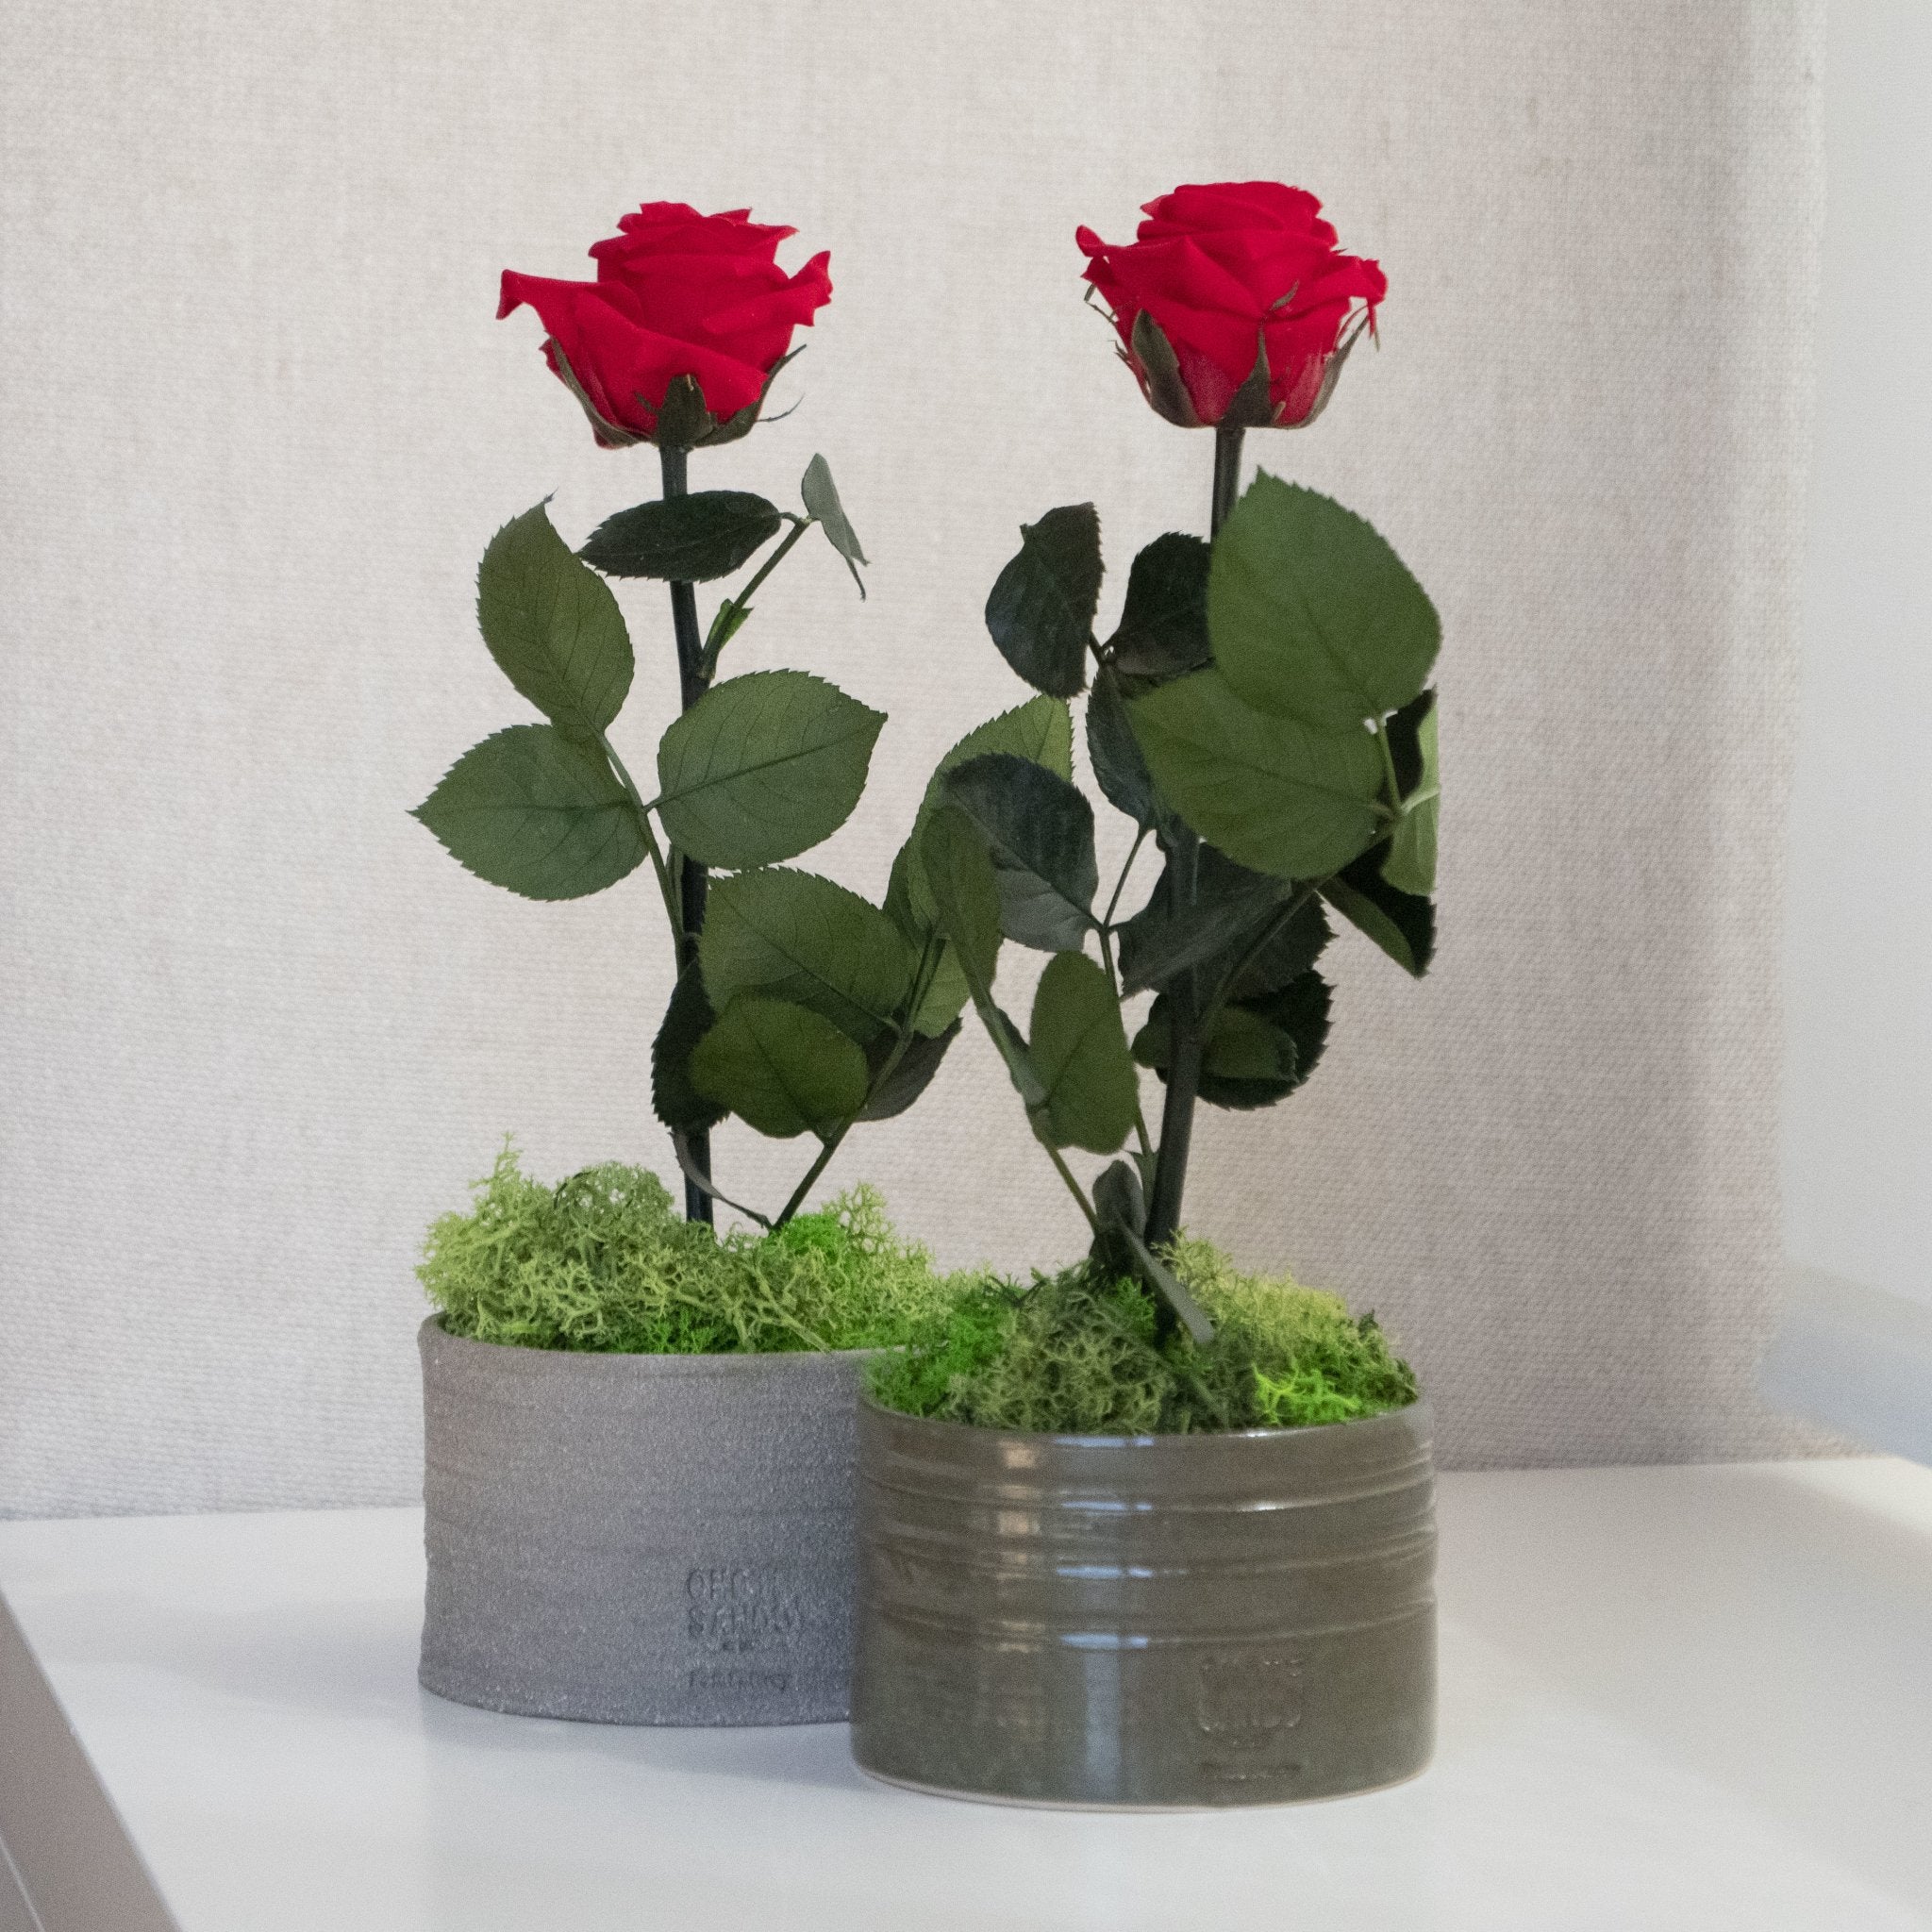 Rose Pott - Omotesando Plants